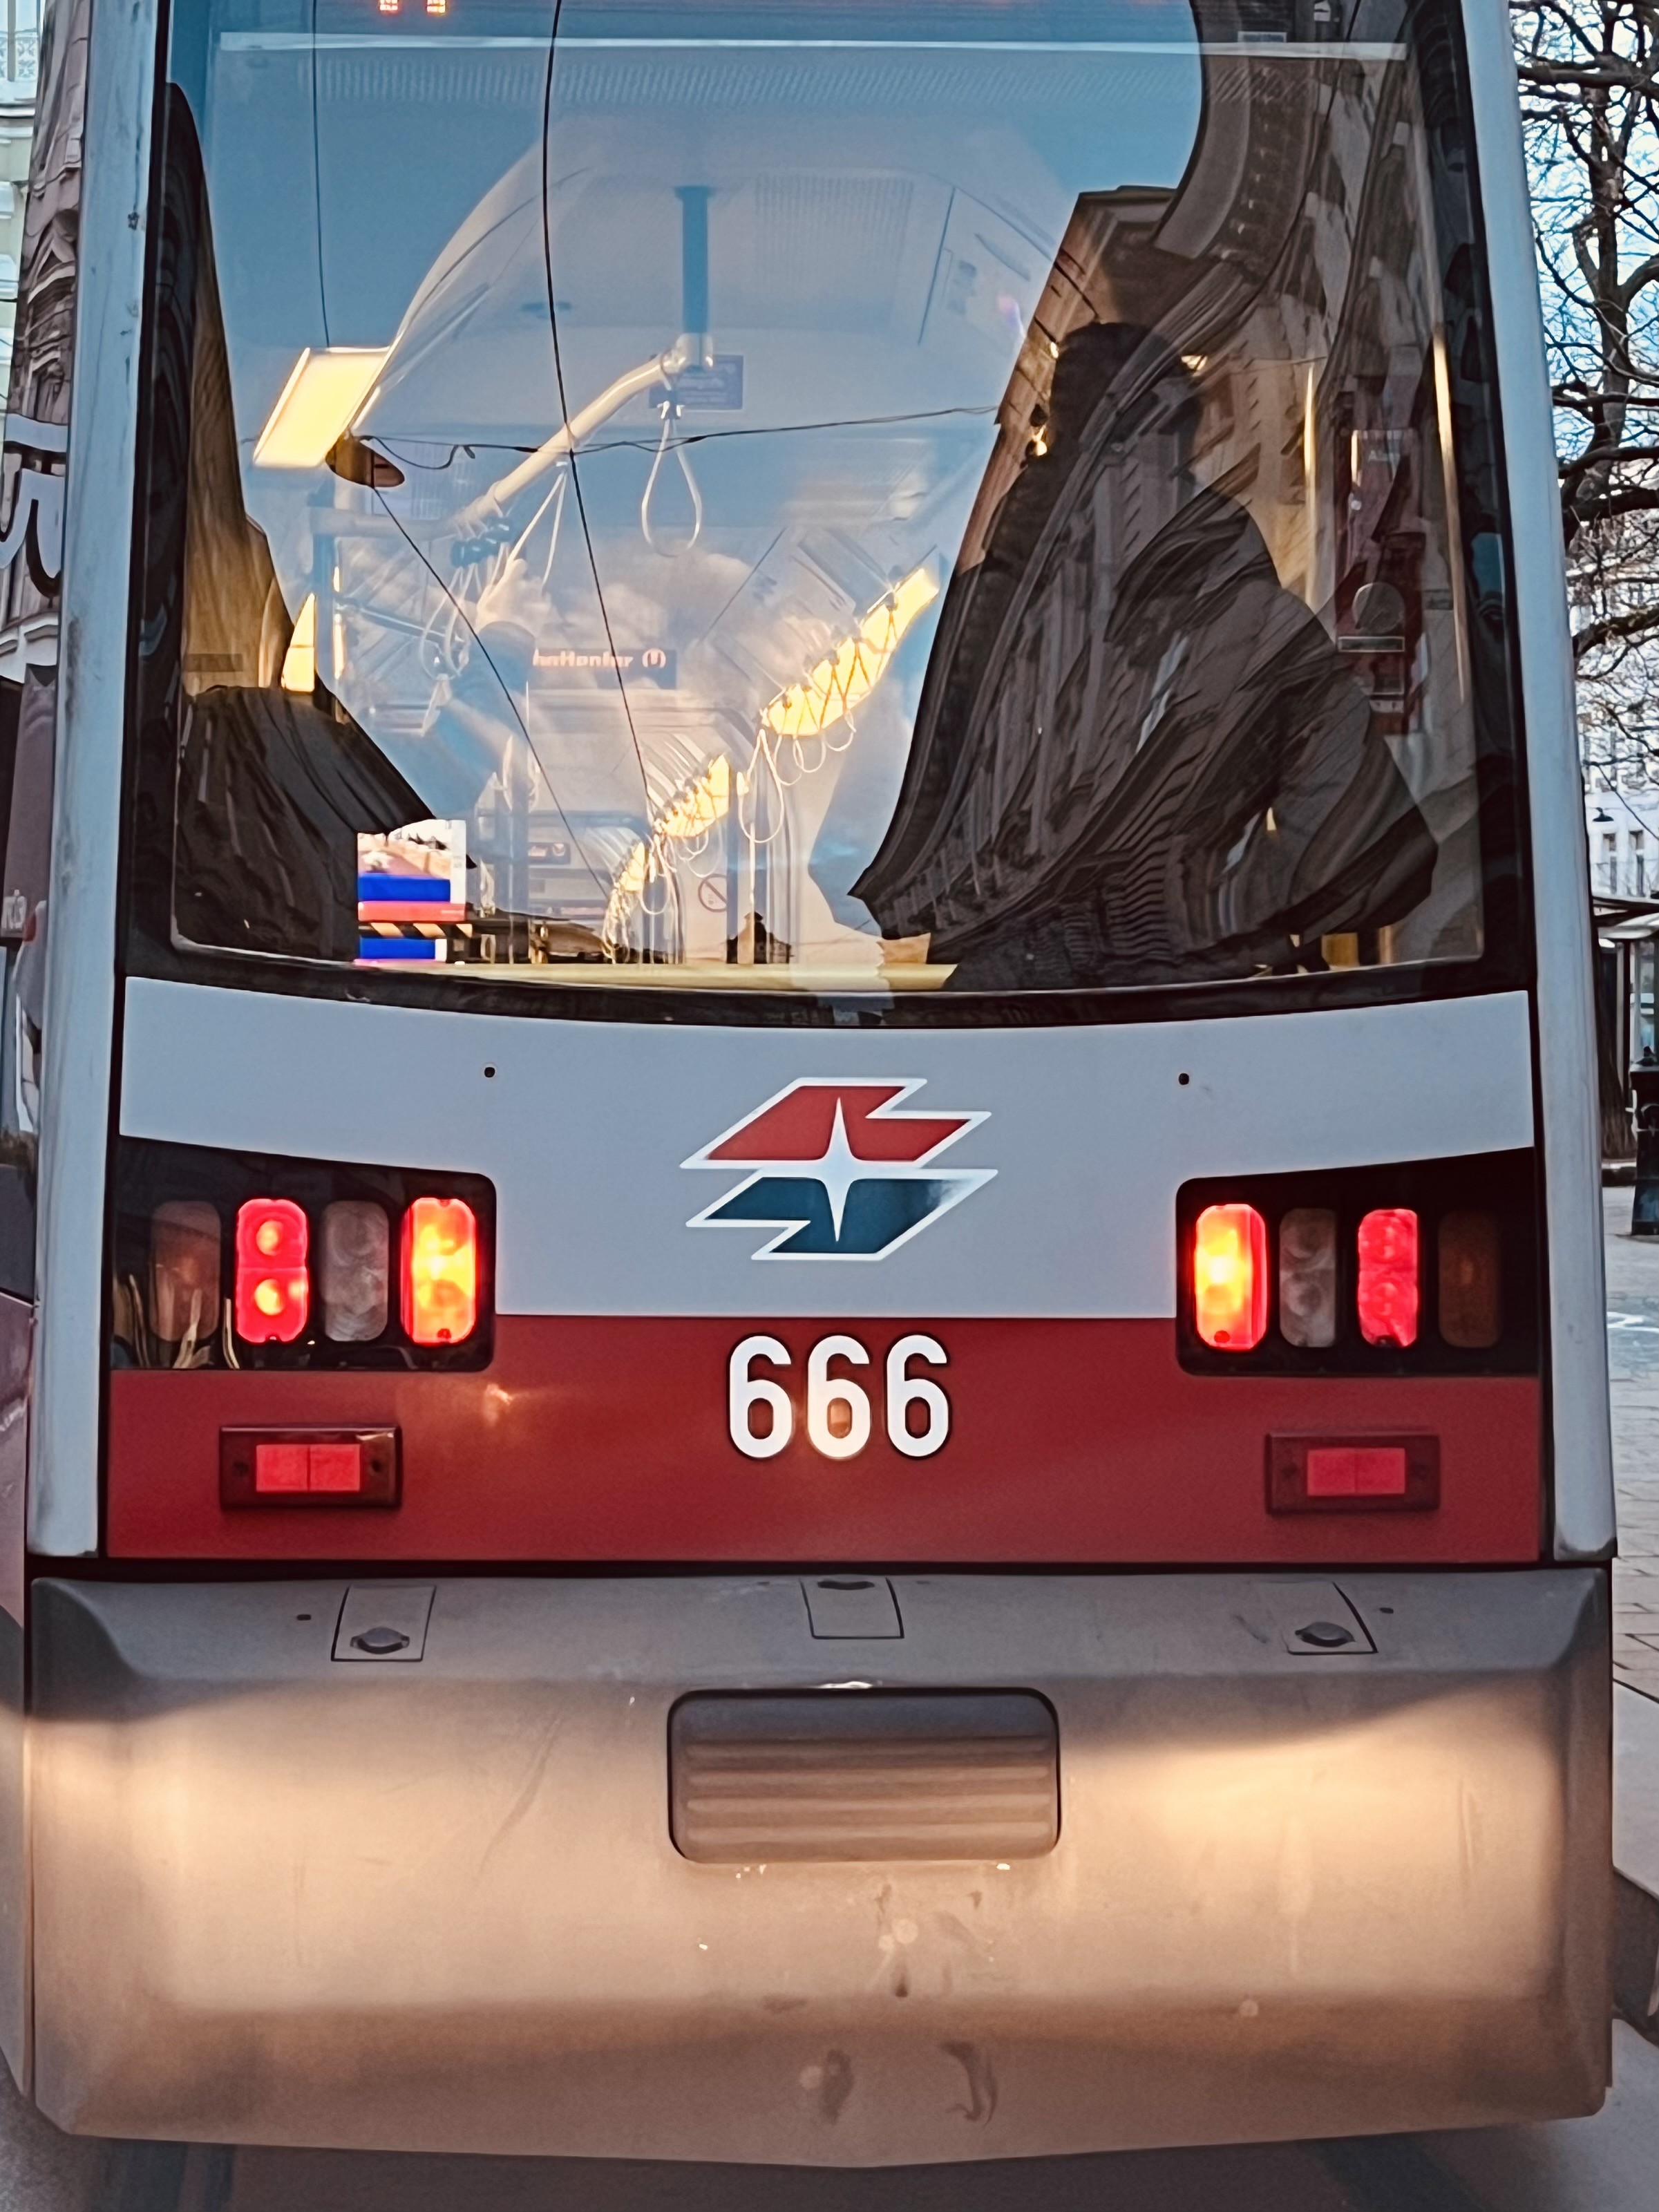 Hinteransicht einer Strassenbahn. Als Kennzeichen ist die Ziffernkombination 666 aufgedruckt. 